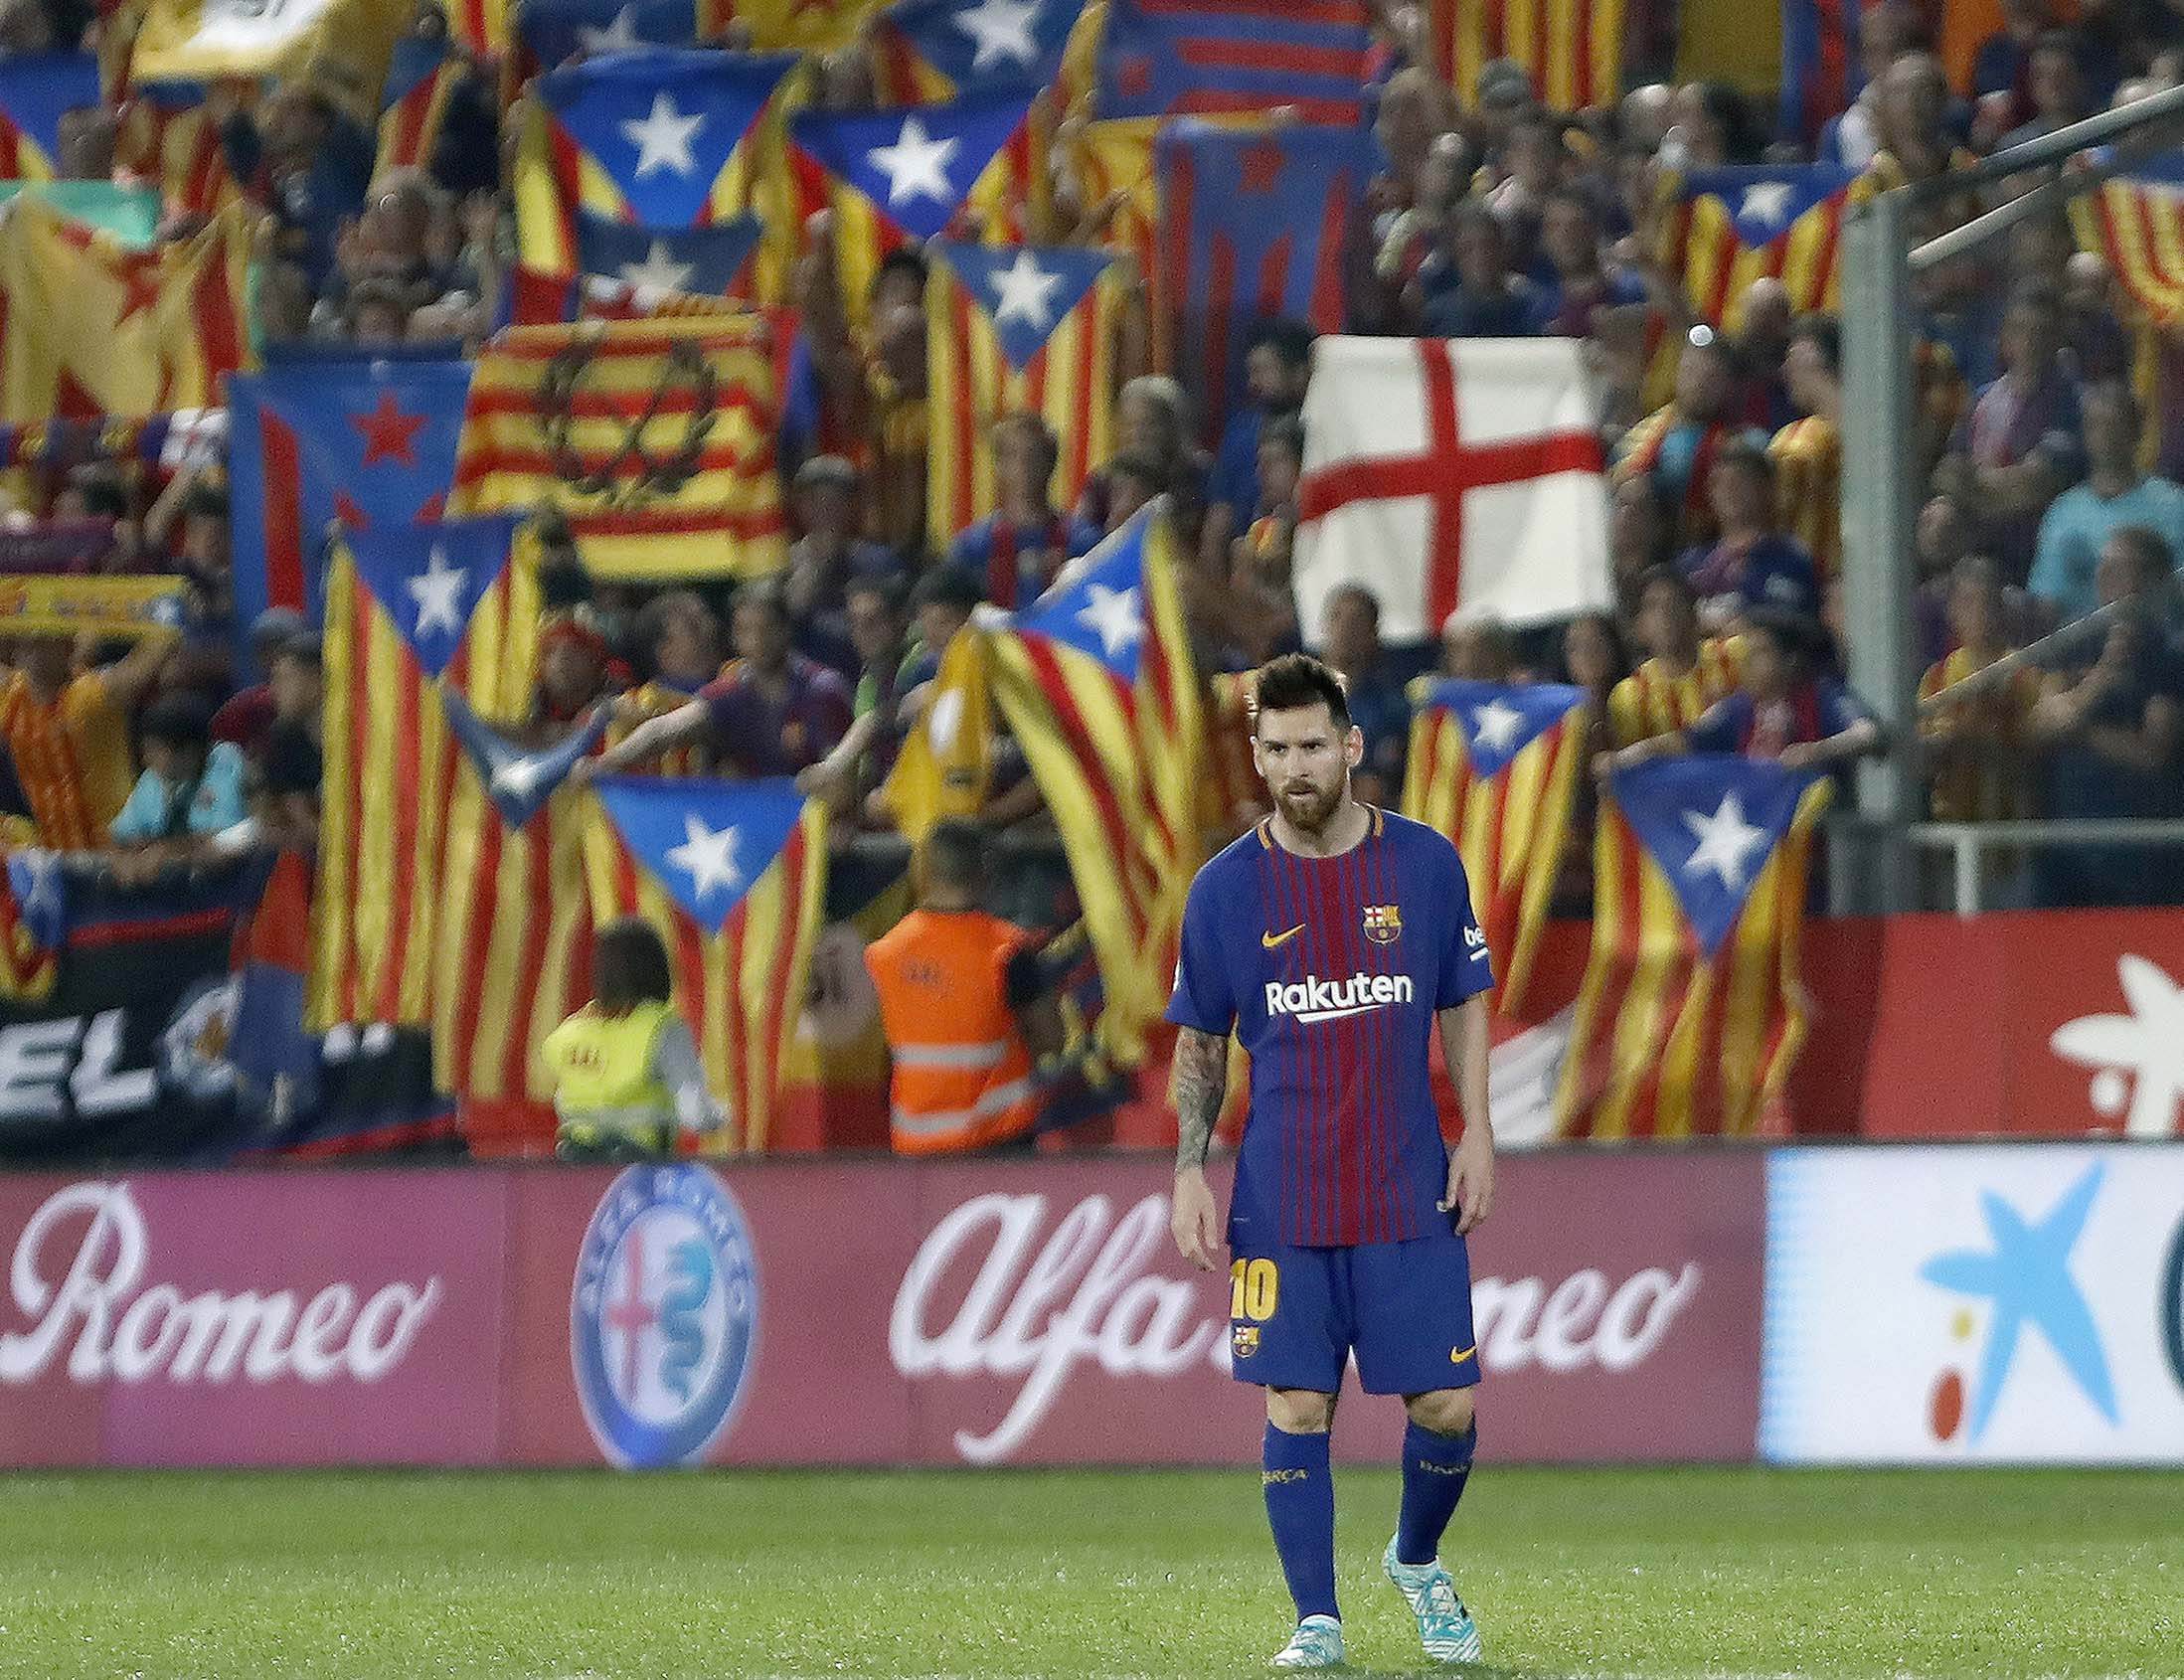 El Barça demanarà "Diàleg, Respecte i Esport" en el partit de Champions